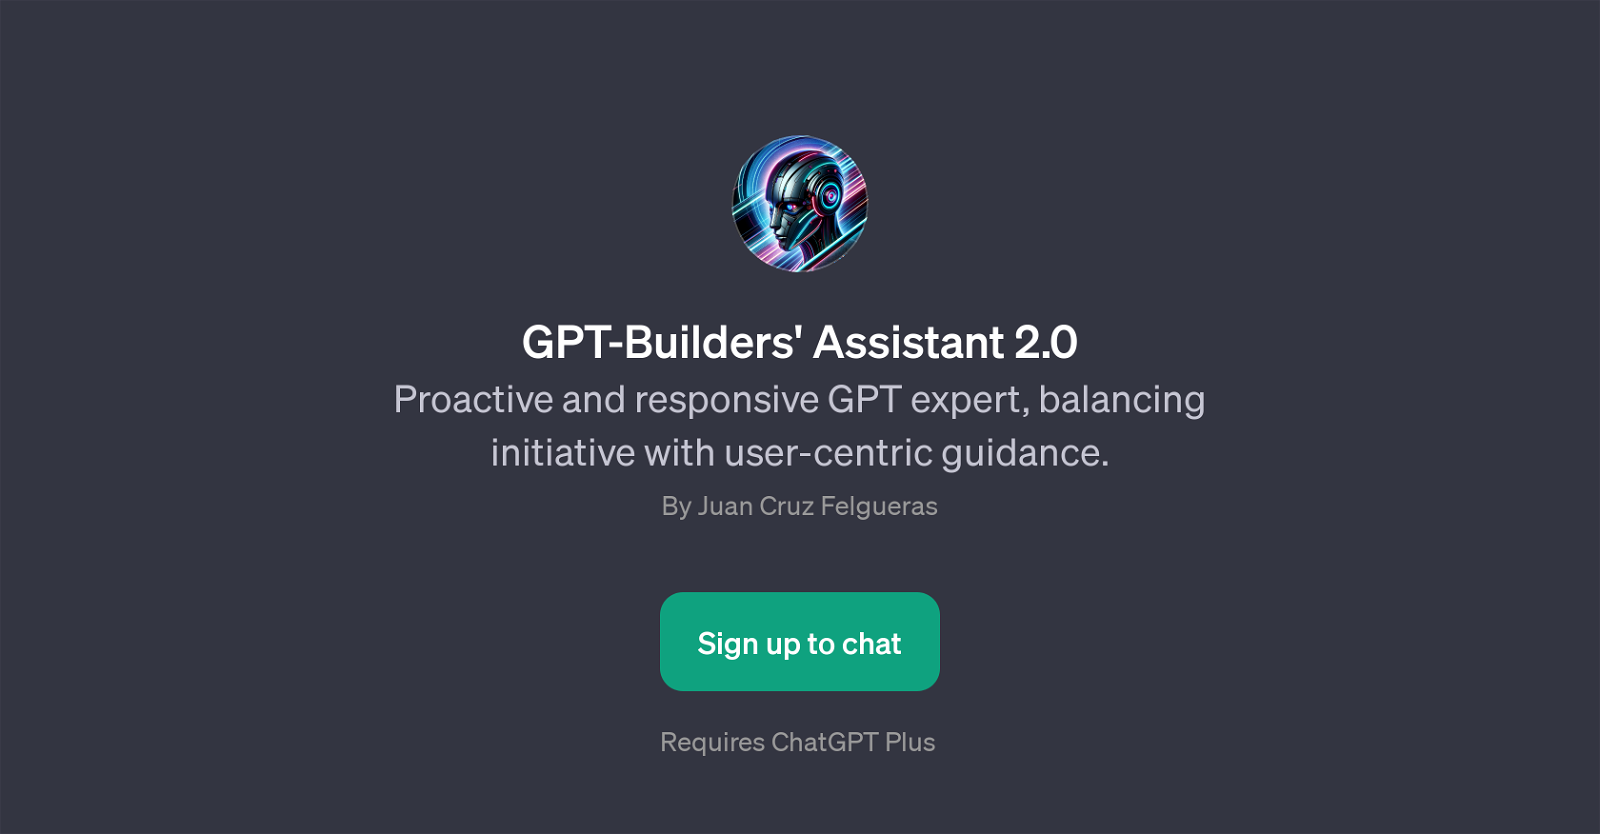 GPT-Builders' Assistant 2.0 website